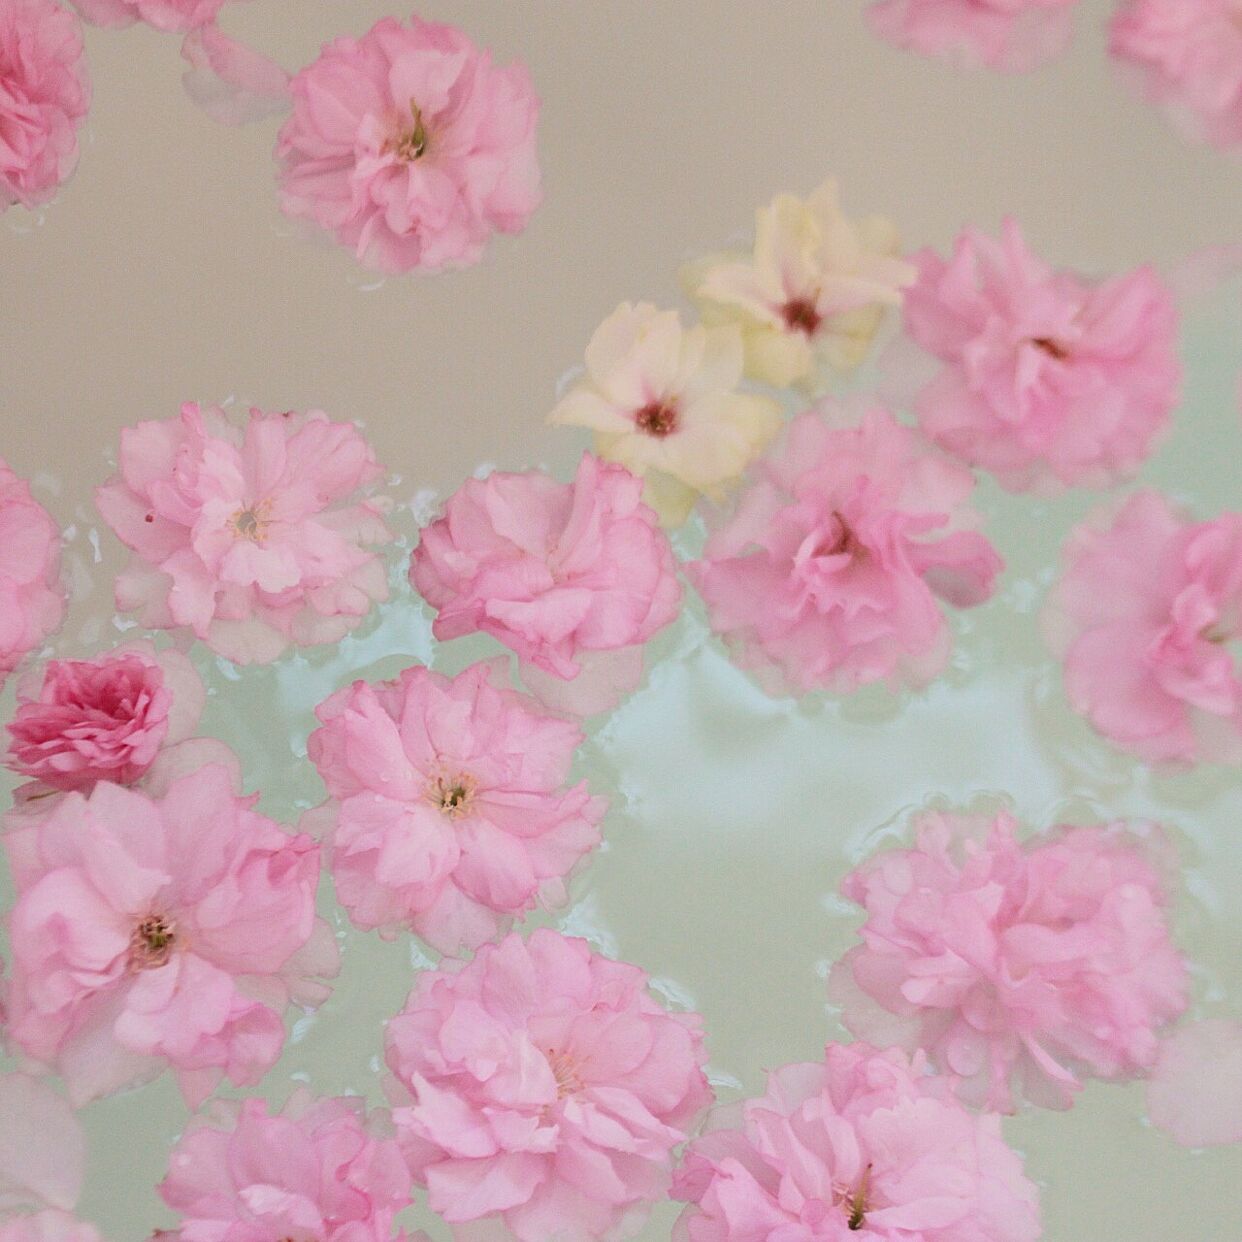 風雨のあとなどで桜の花がたくさん落ちたときは、湯舟に浮かべて桜風呂もいいですね♡一年に一度の贅沢なひとときをお楽しみください。